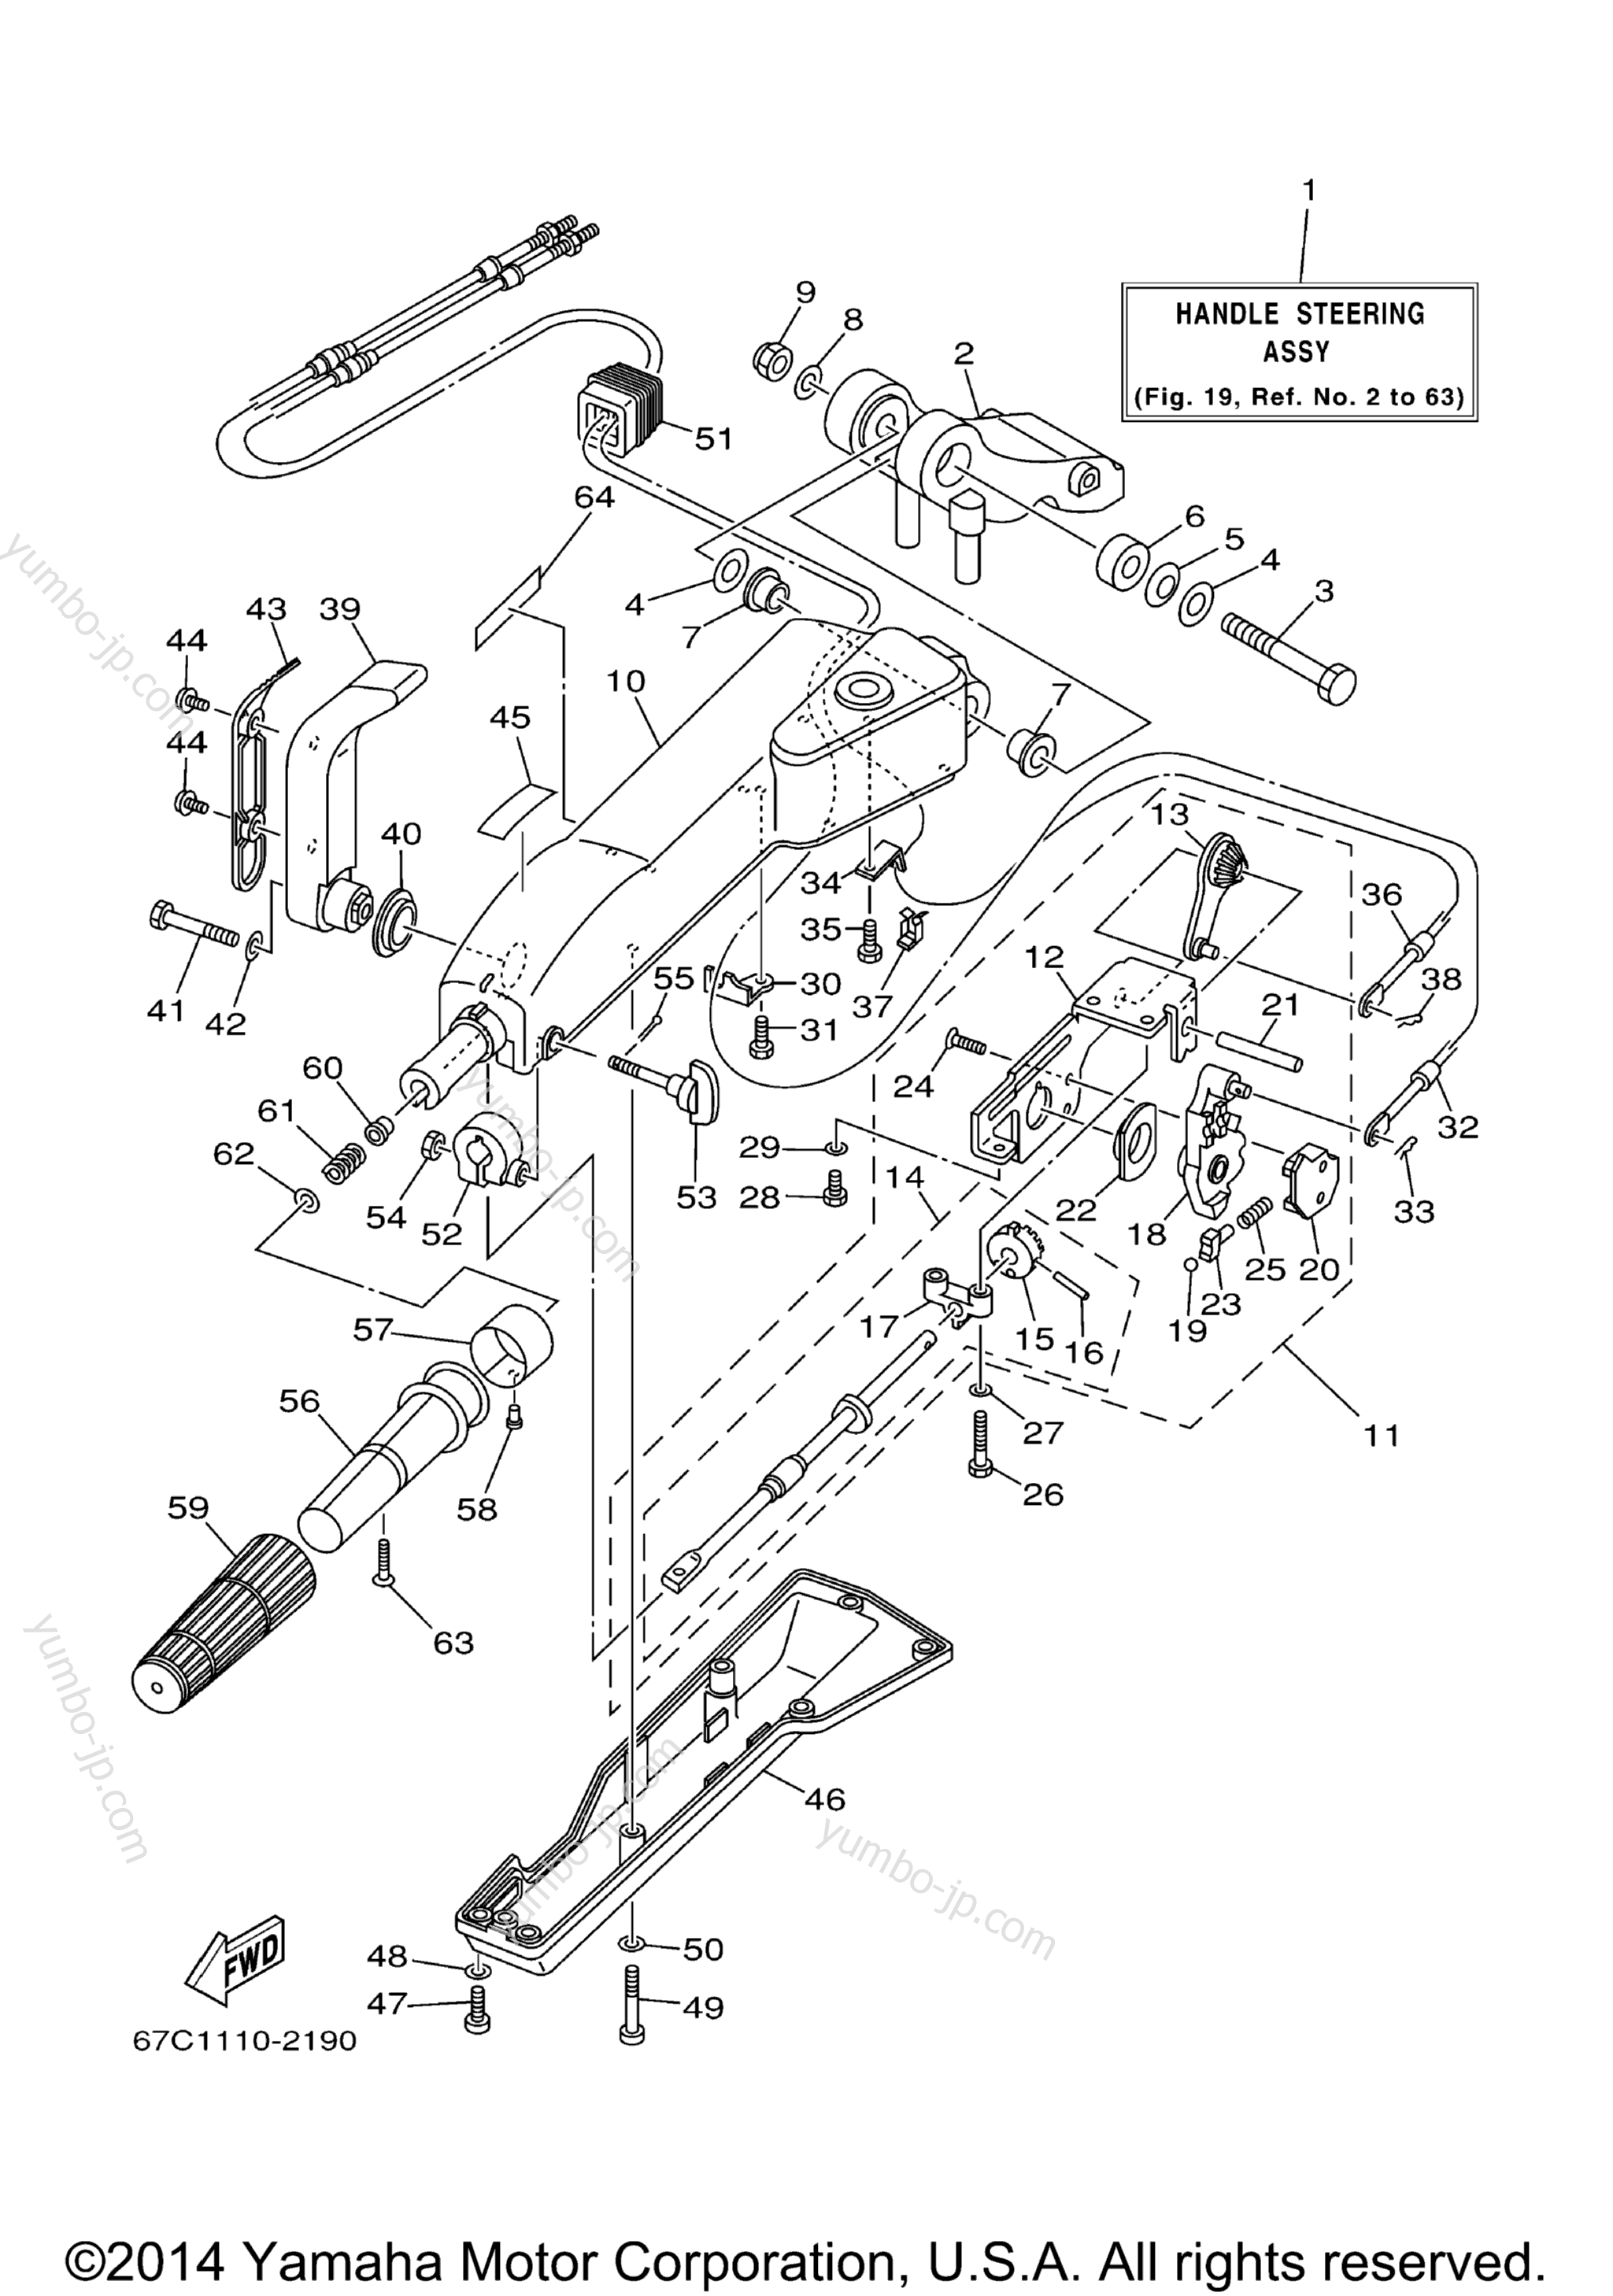 Steering Mh для лодочных моторов YAMAHA F40MSHB_MLHB_MJHB_EJRB_ESRB_TLRB (F40ESRB) 2003 г.